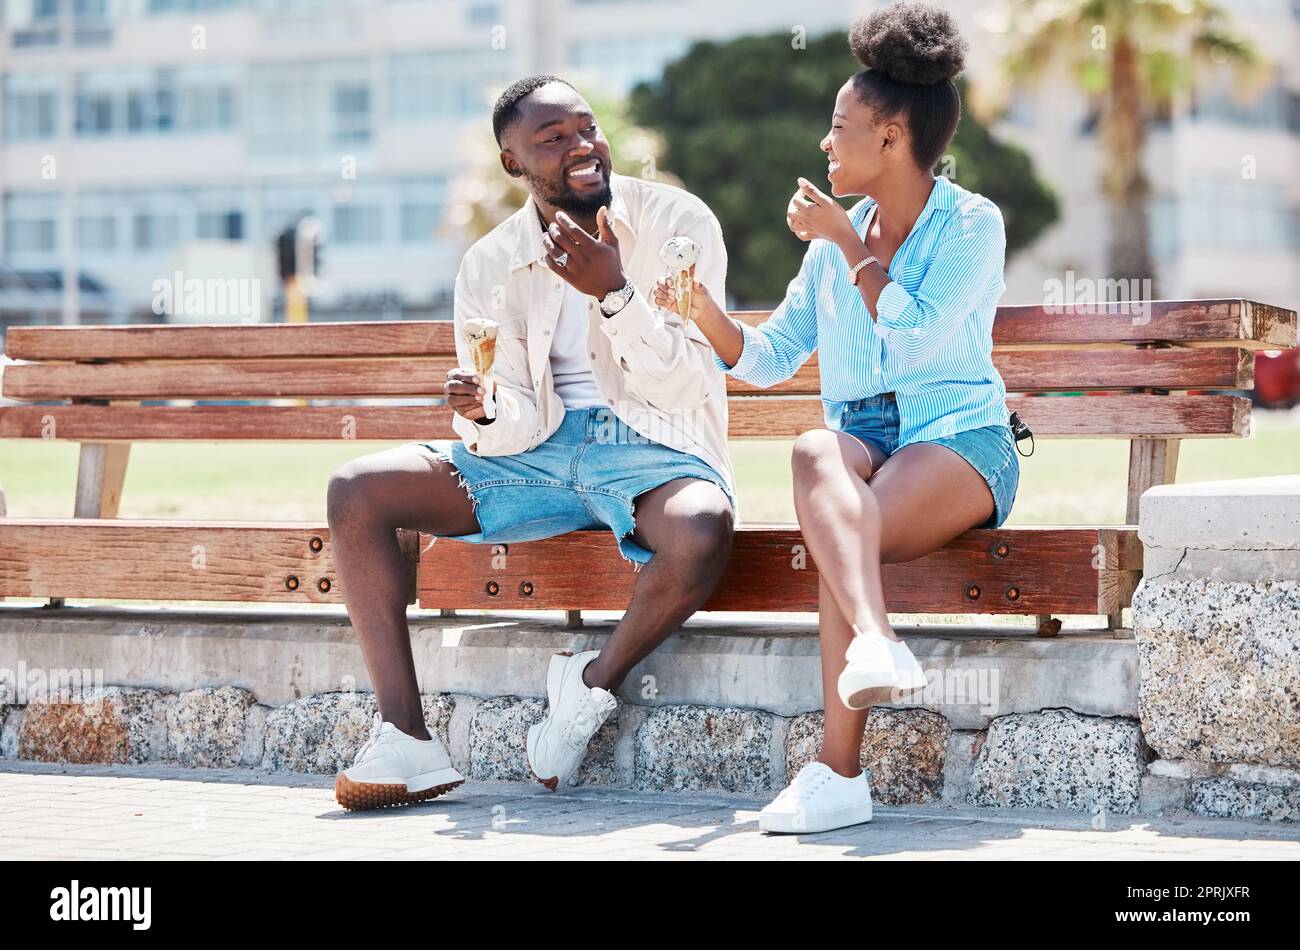 Felice coppia nera che mangia un gelato su una panchina da spiaggia insieme, sorridendo mentre si legano e ridono. Giovane uomo e donna afro-americano che si gode il loro romanticismo estivo, il tempo libero e la loro relazione Foto Stock